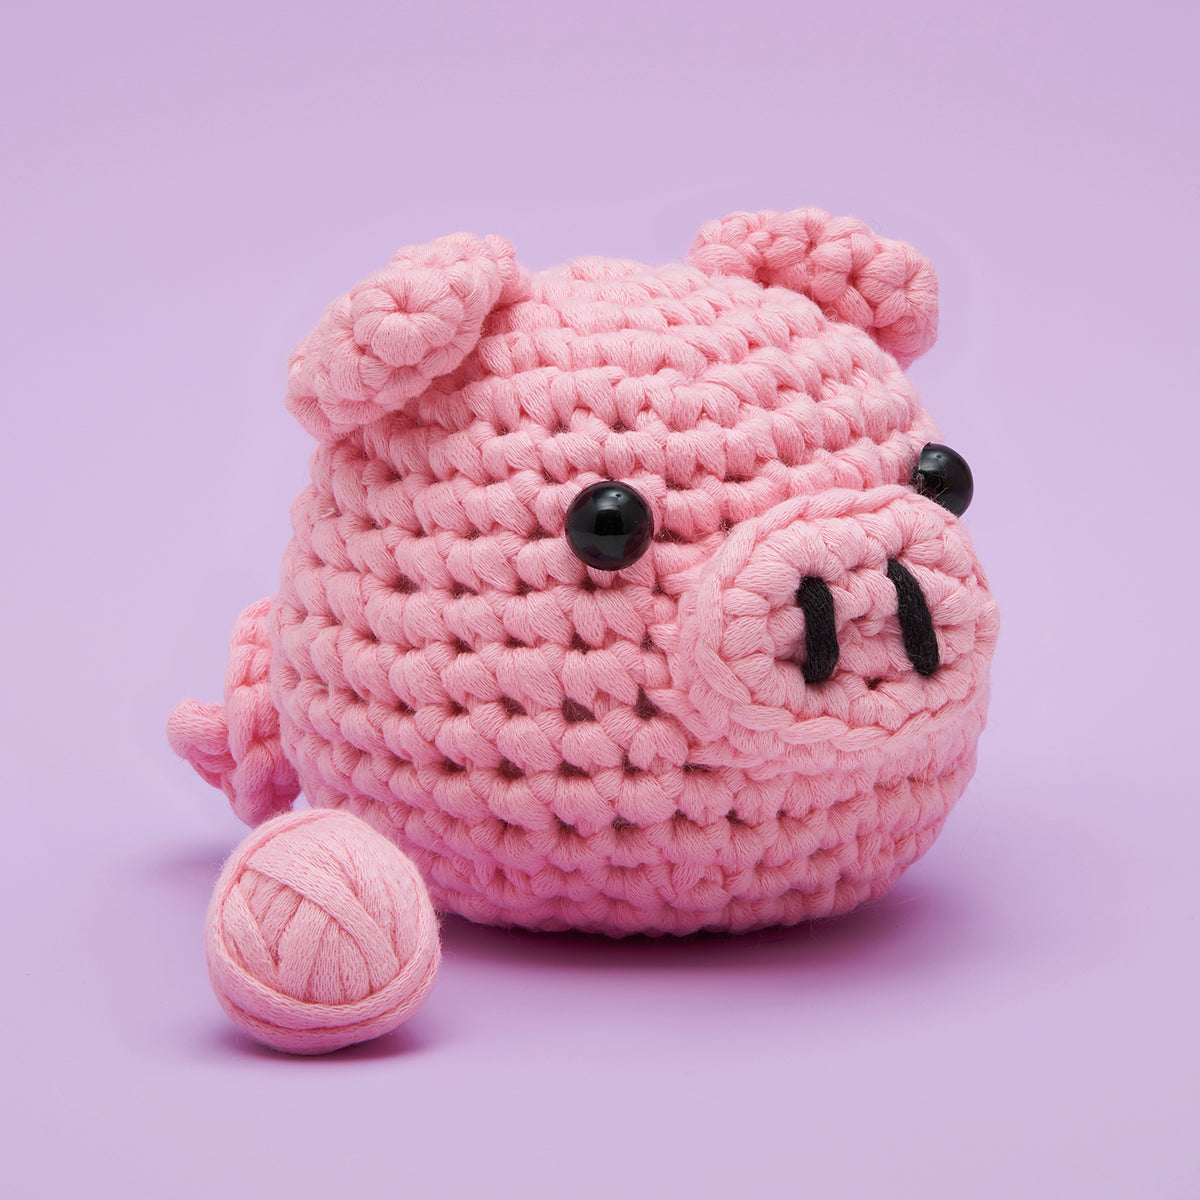 Bacon the Pig Beginner Crochet Kit